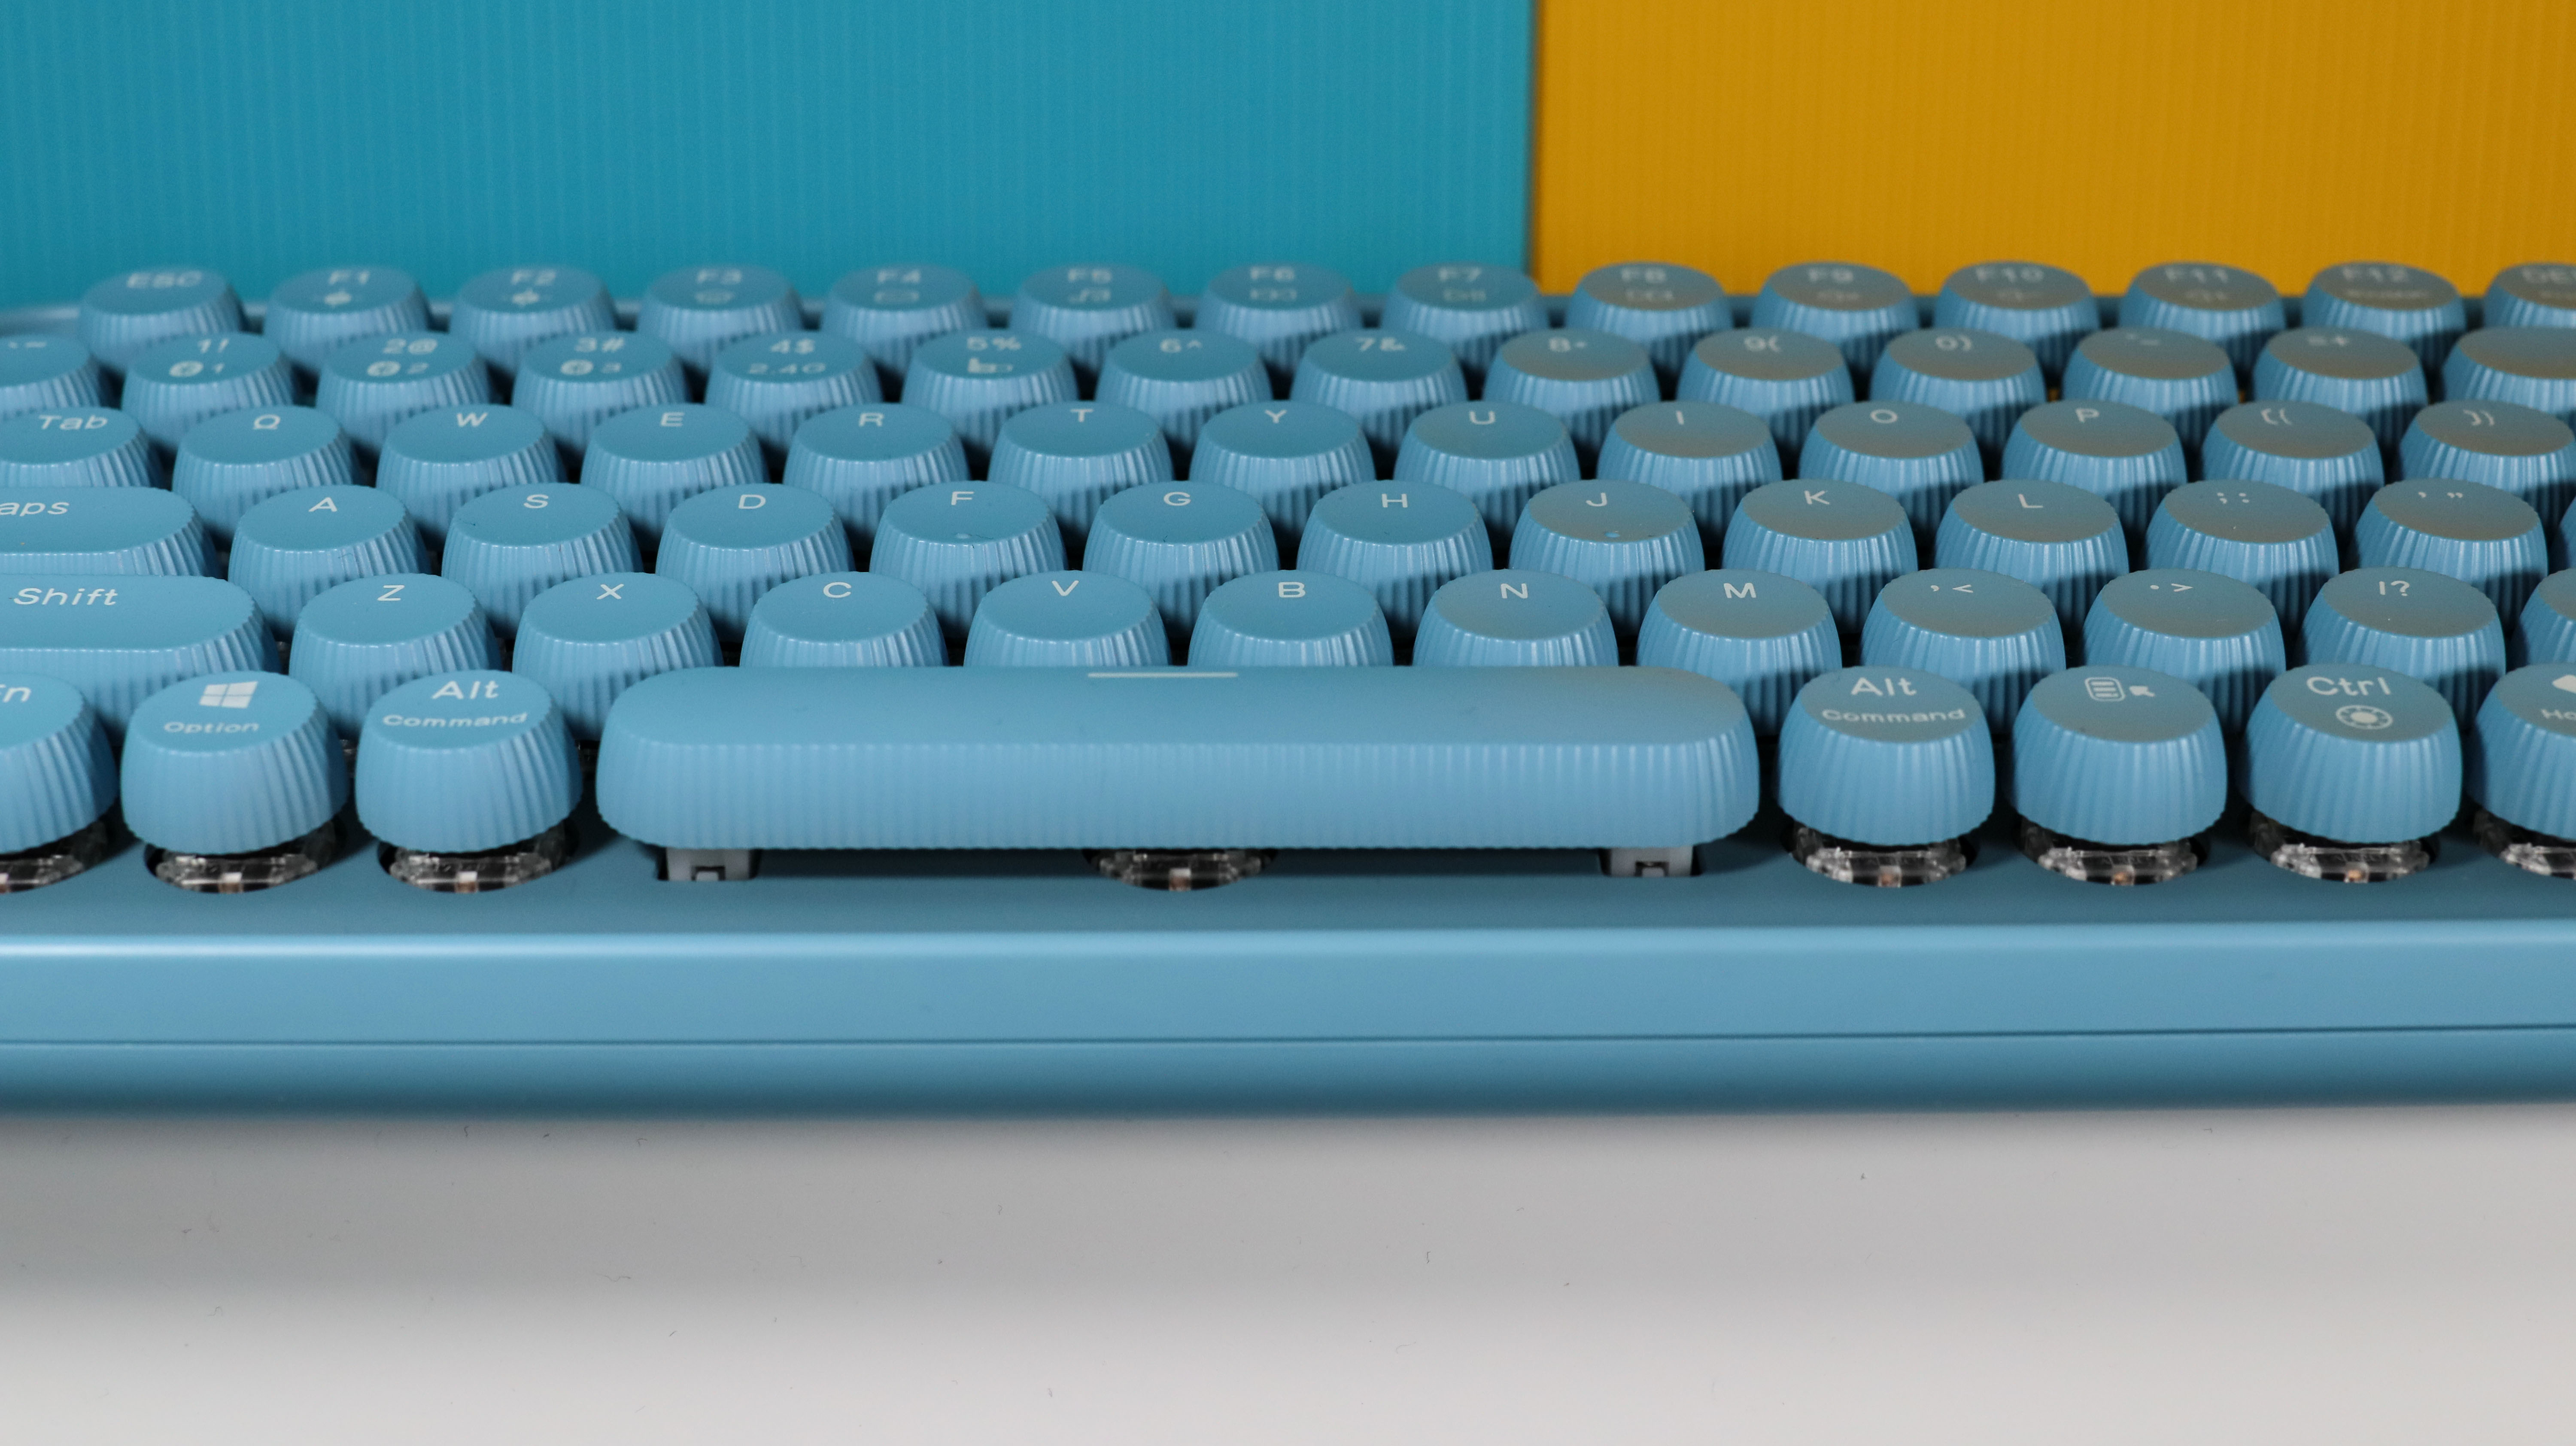 机械键盘的颜值巅峰-雷柏机械键盘ralemo pre5&鼠标Air 1使用体验